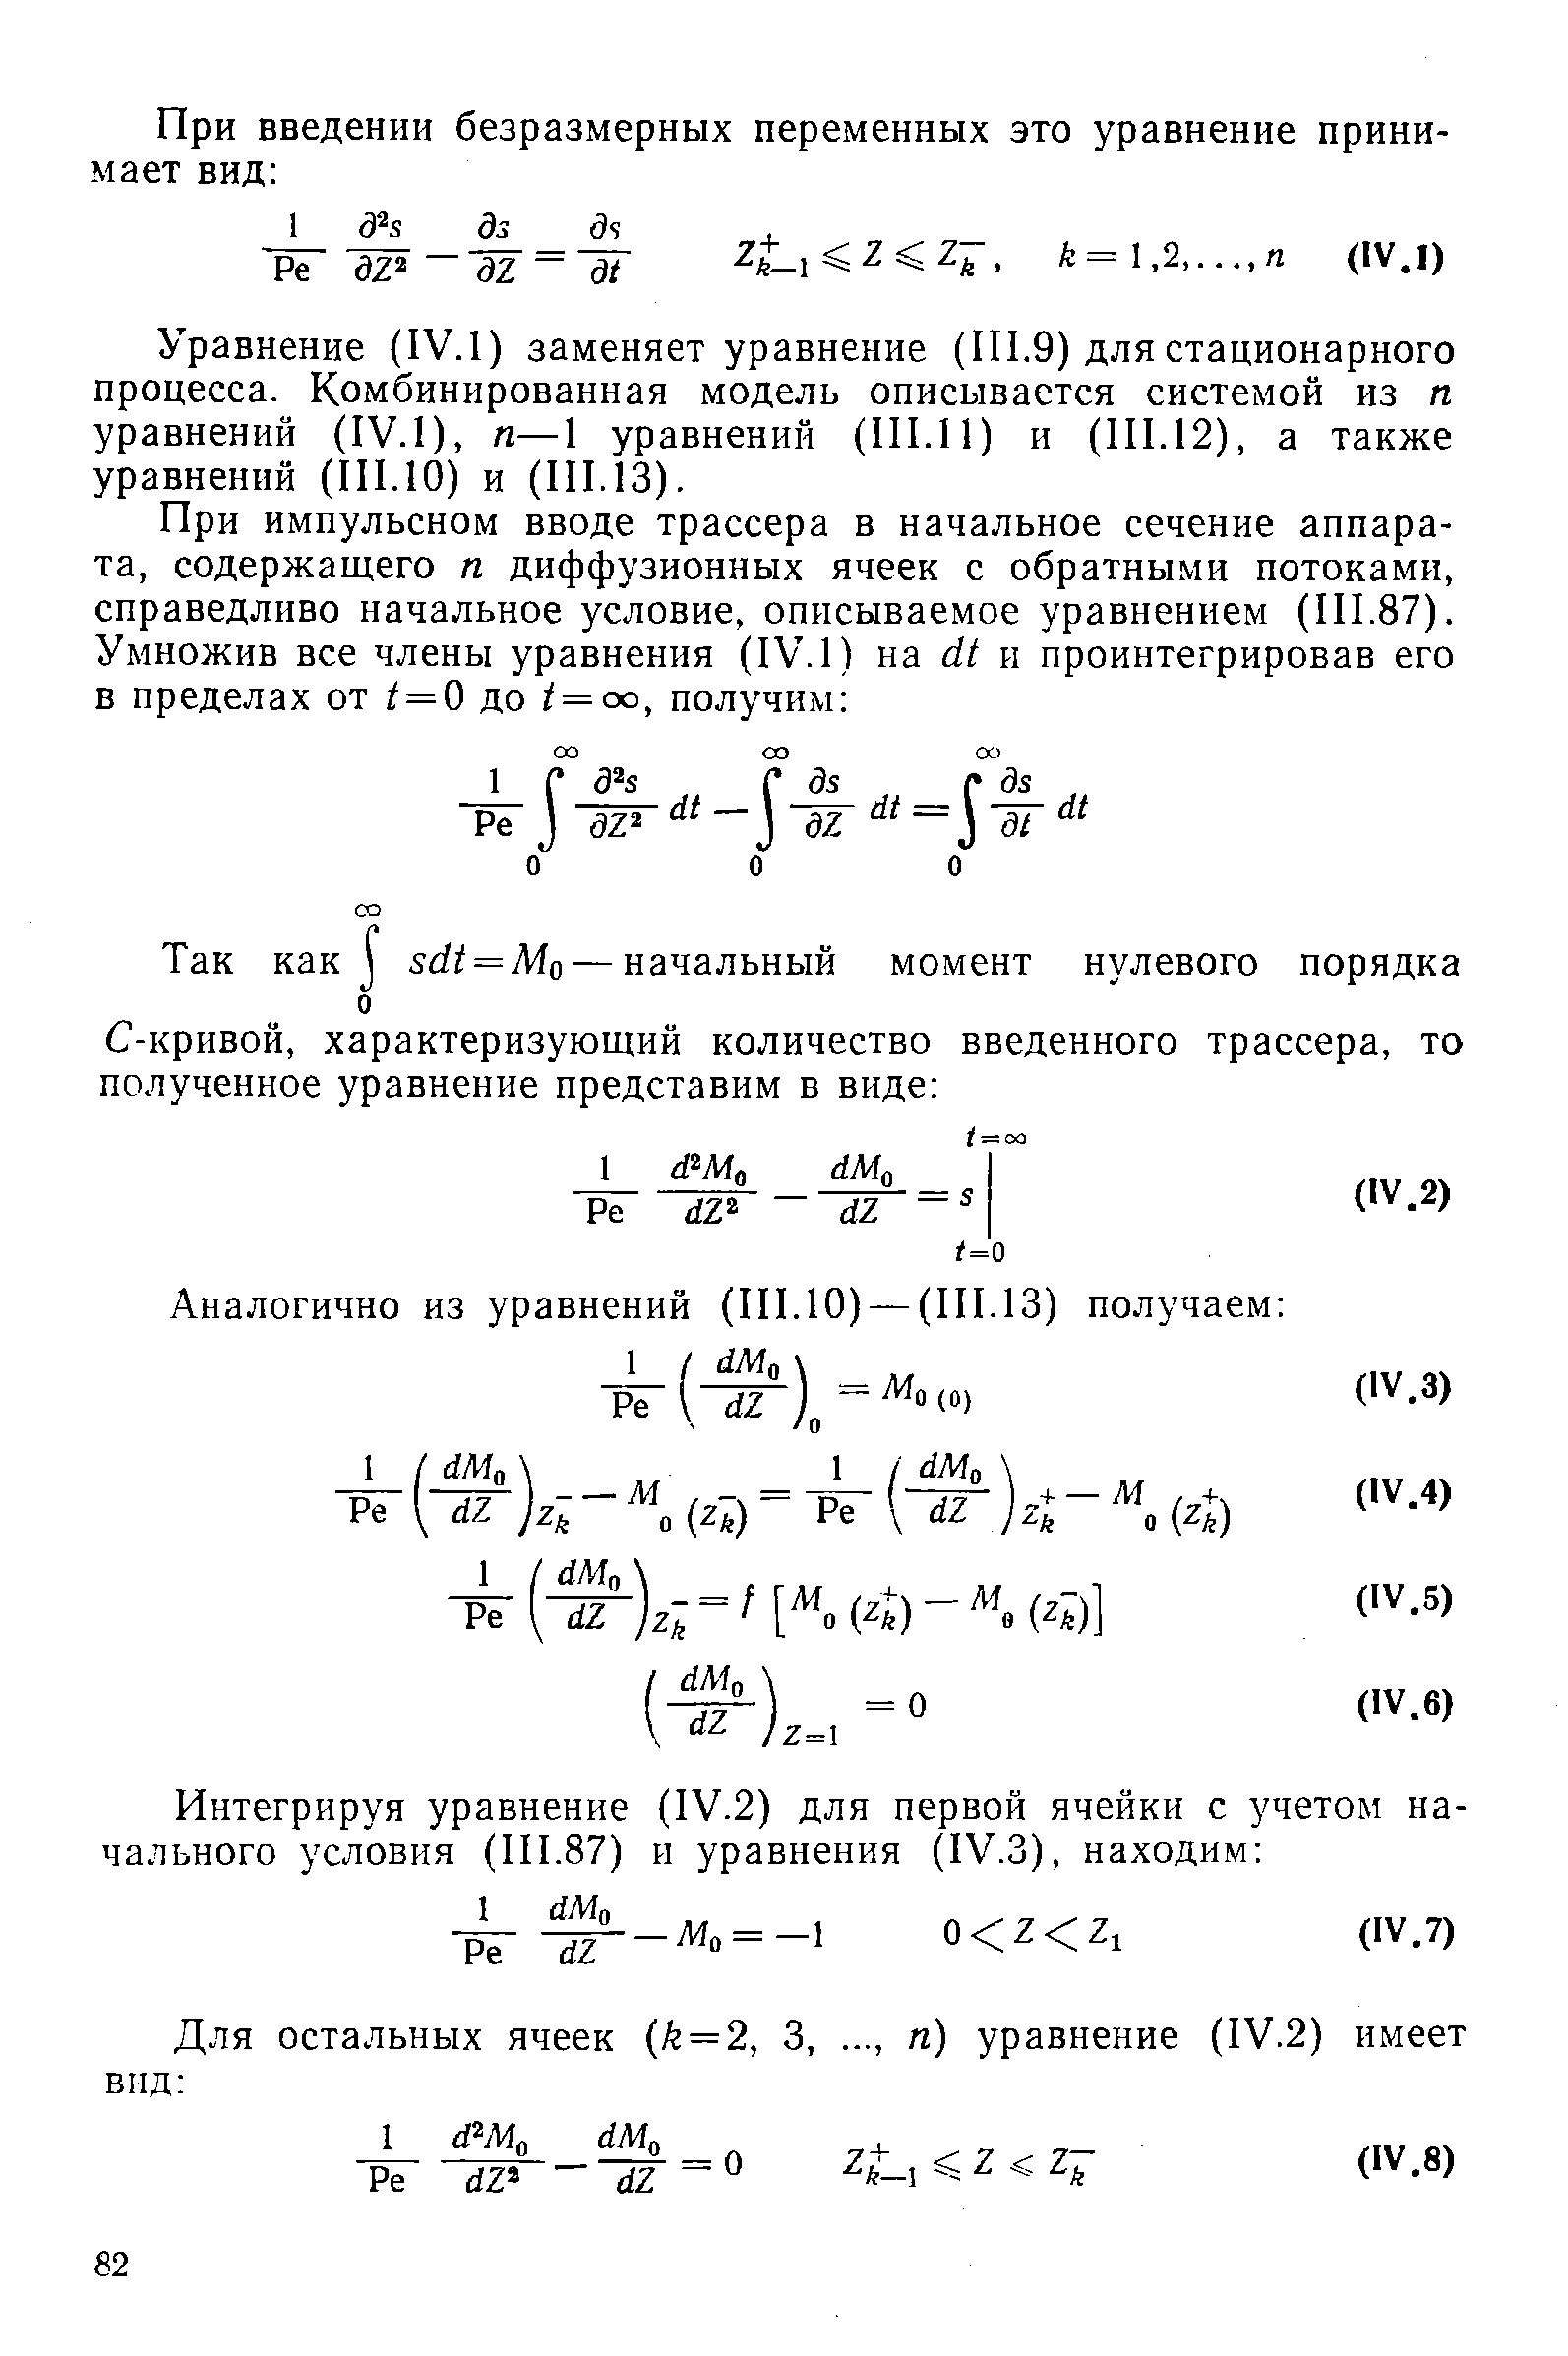 Уравнение (IV.1) заменяет уравнение (1П.9) для стационарного процесса. Комбинированная модель описывается системой из п уравнений (IV.1), п—1 уравнений (П1.П) и (П1.12), а также уравнений (HI.10) и (111.13).